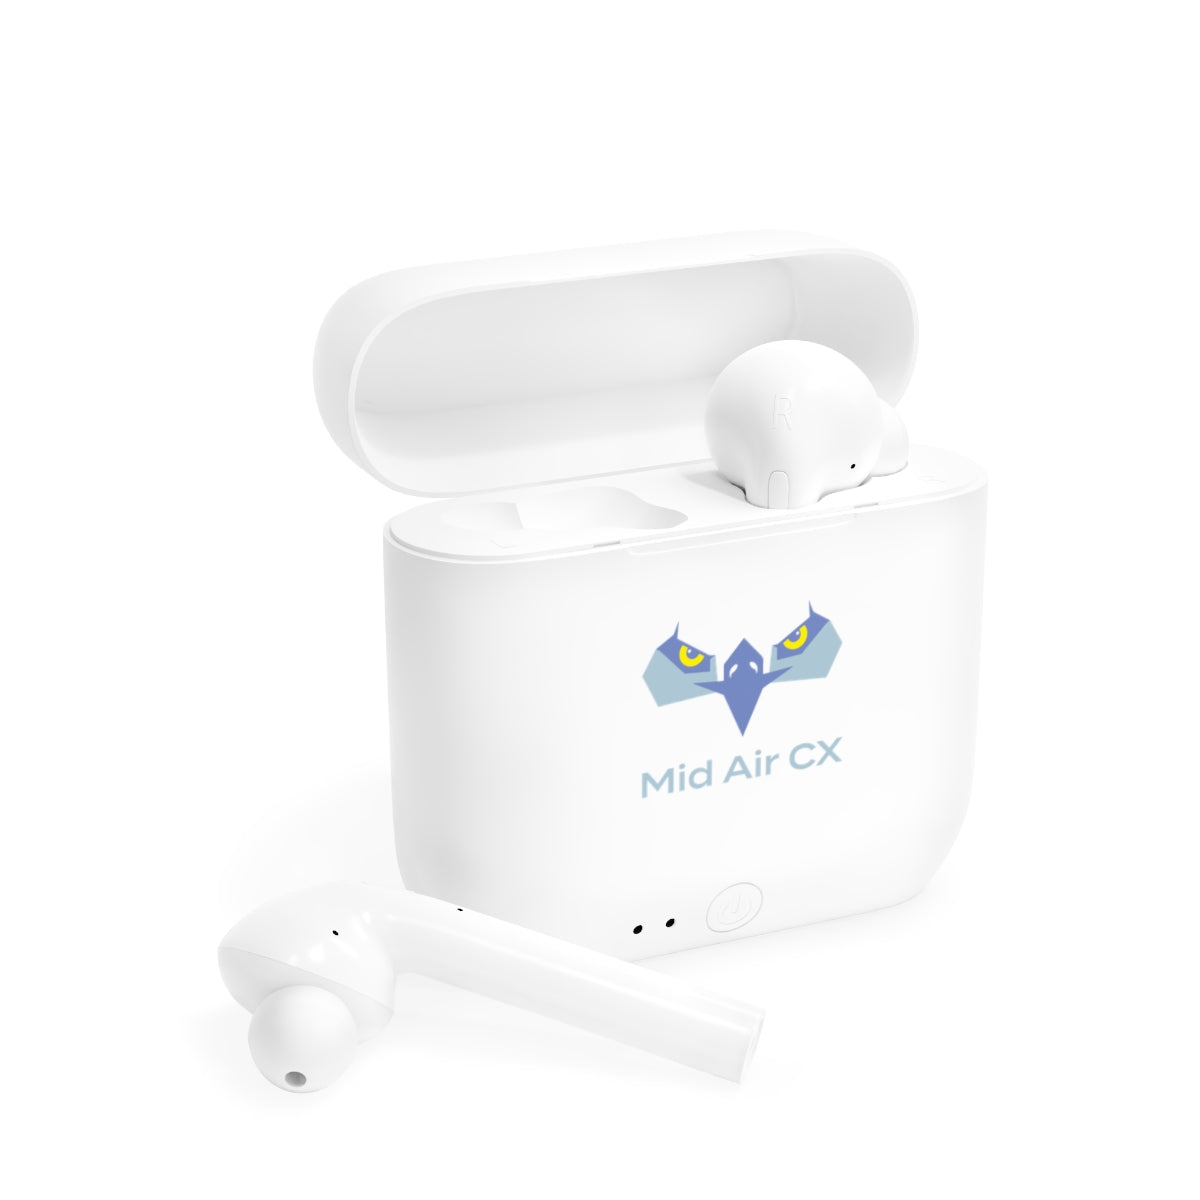 MACXIFY Wireless Earbuds